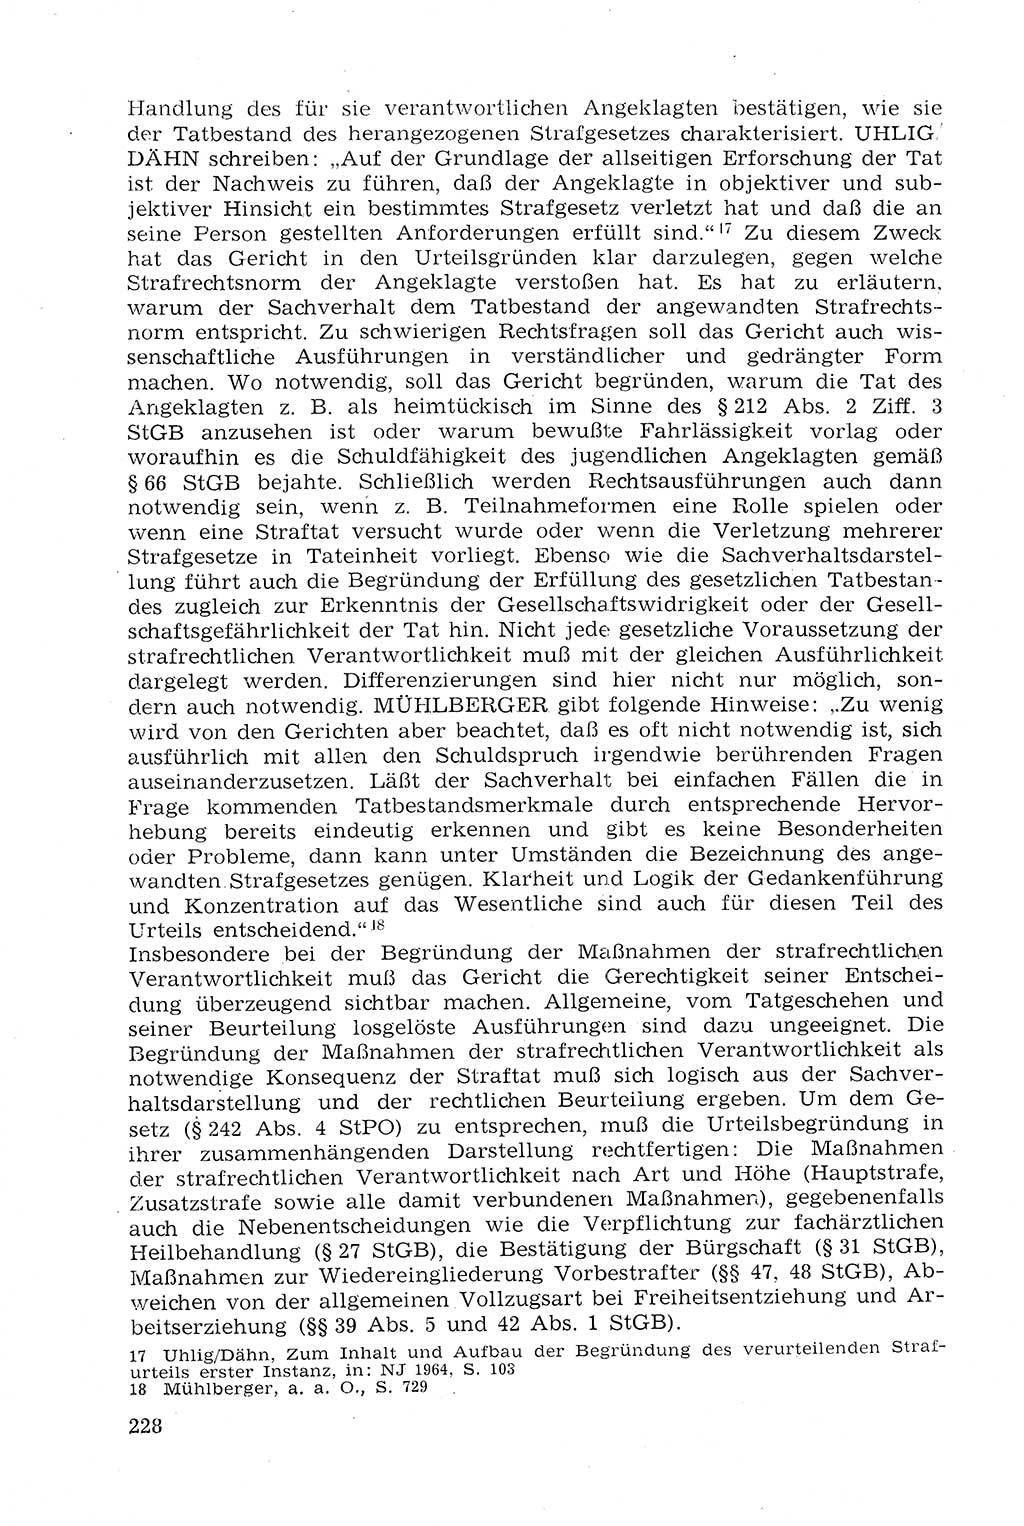 Strafprozeßrecht der DDR (Deutsche Demokratische Republik), Lehrmaterial 1969, Seite 228 (Strafprozeßr. DDR Lehrmat. 1969, S. 228)